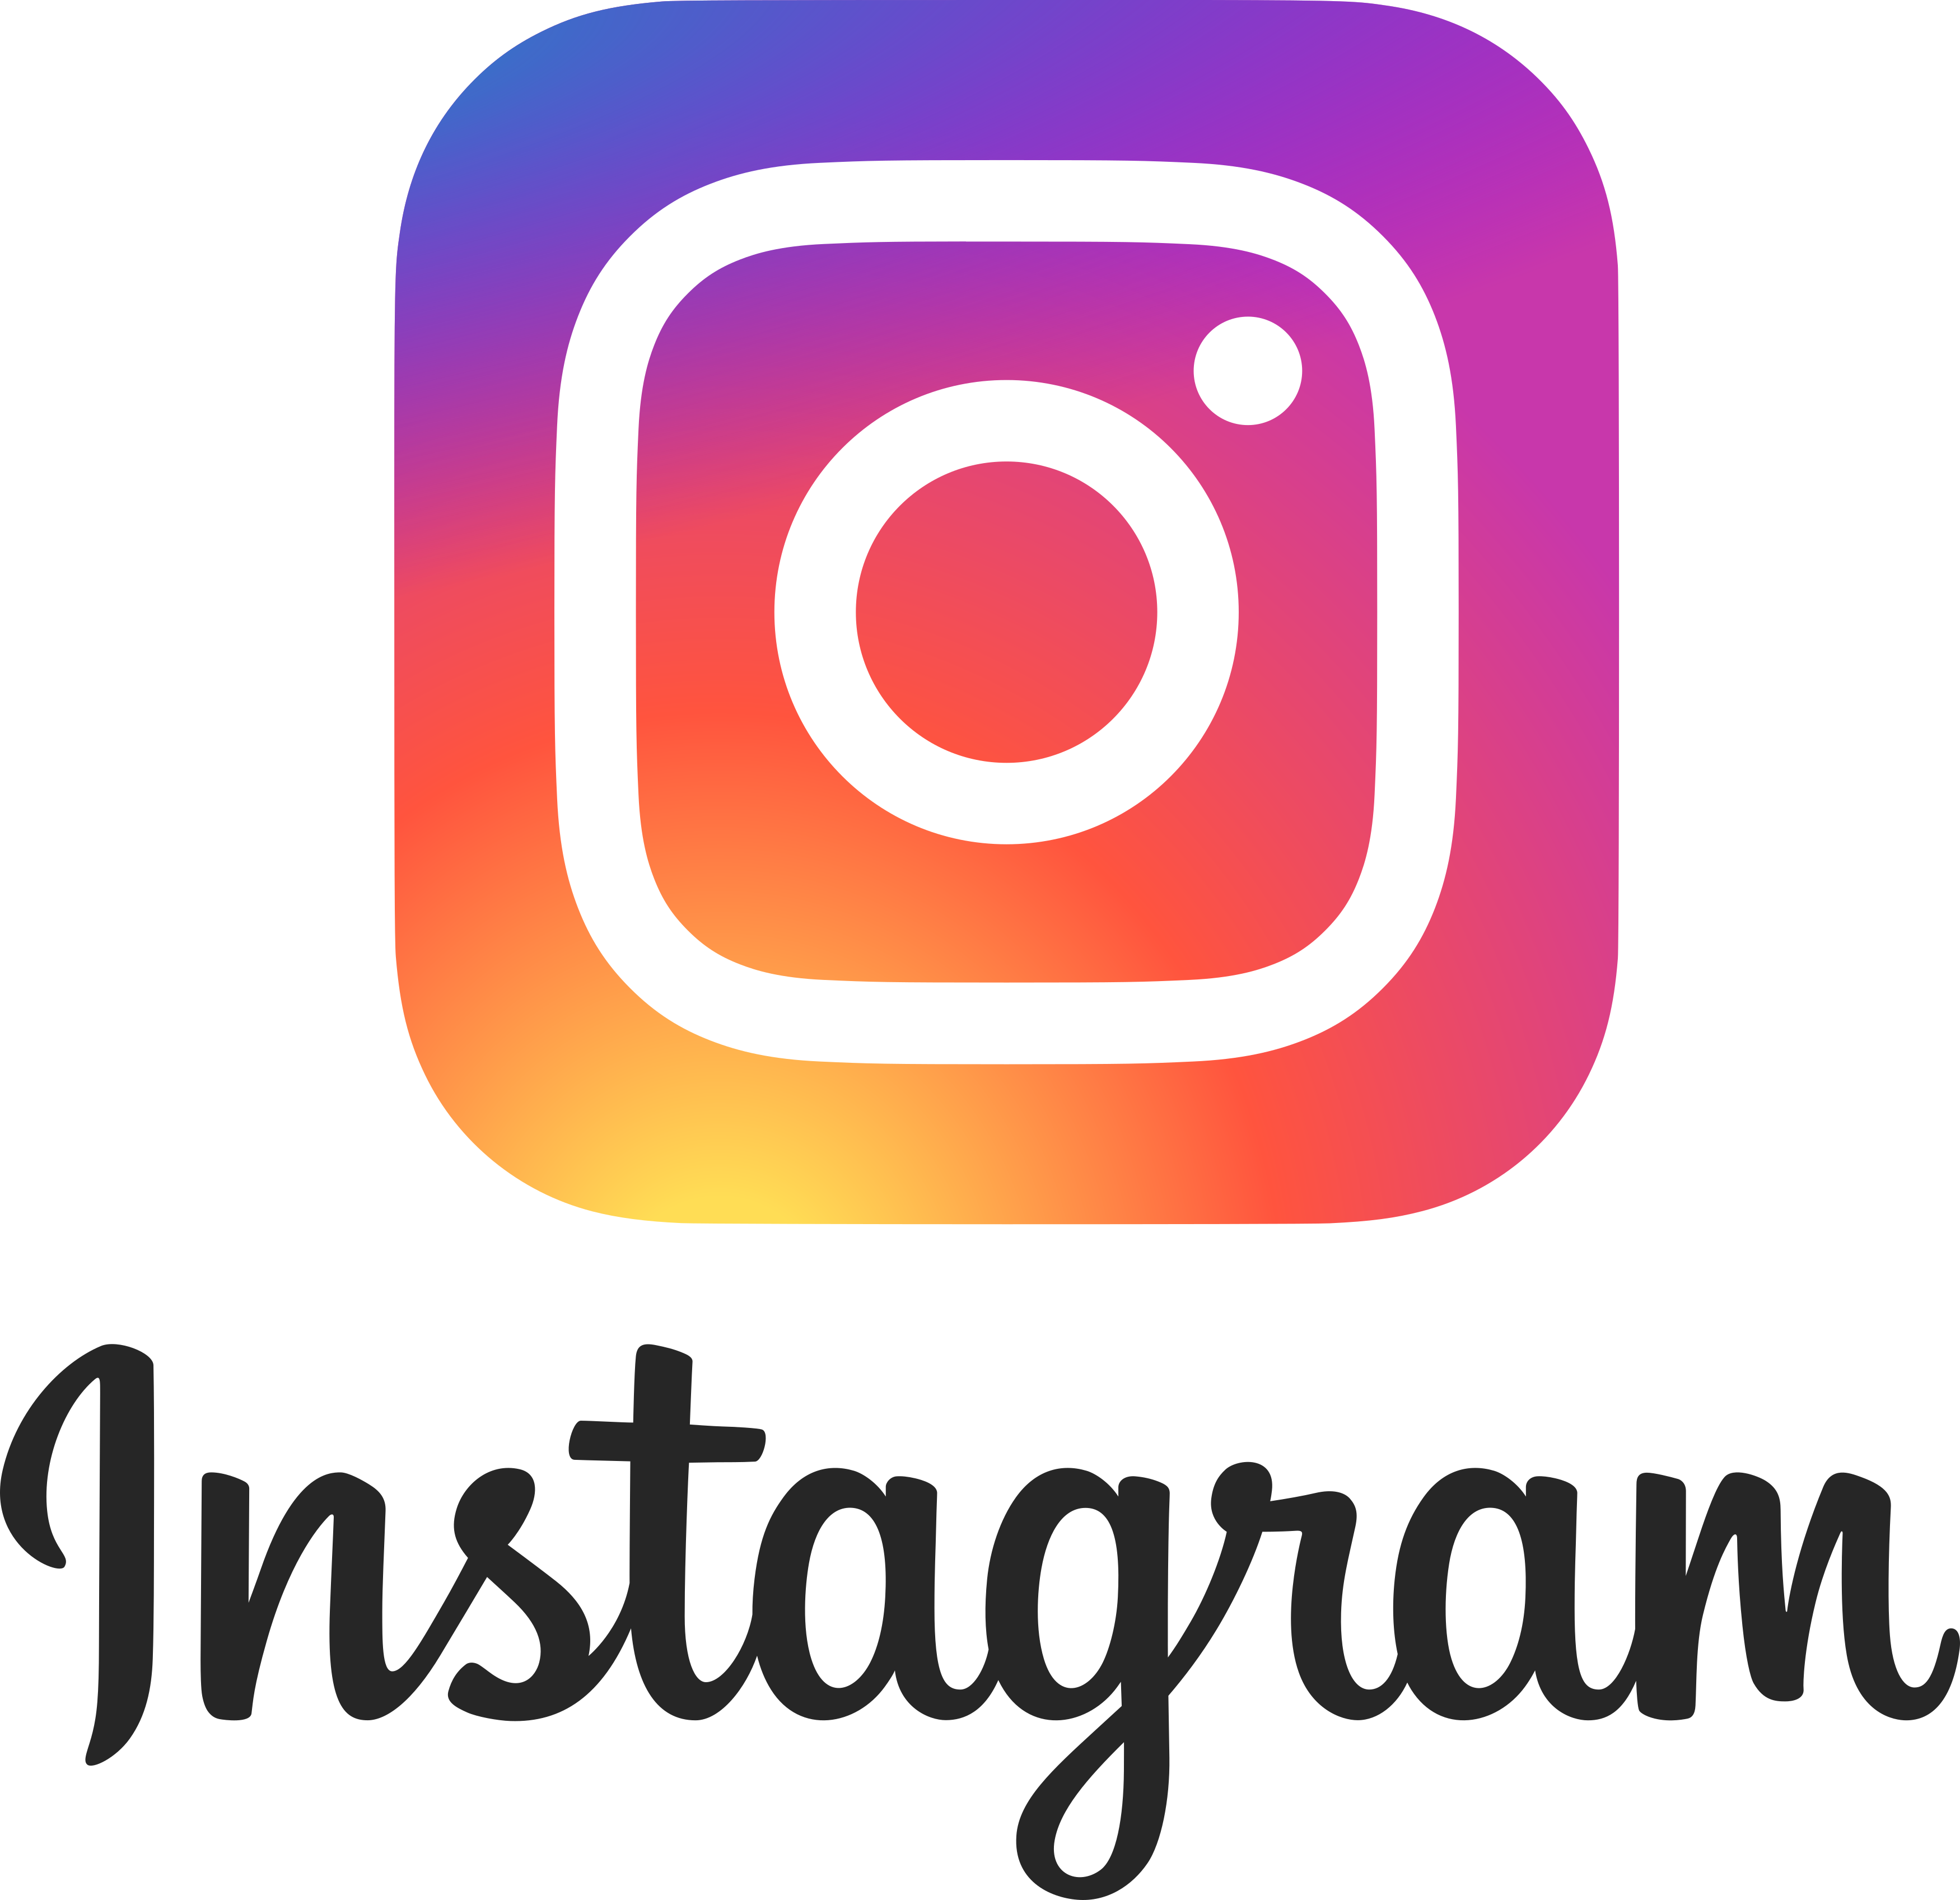 Instagram Logo 2.png 8 De Abril De 2017 927 Kb 3500 × 3393 - Instagram, Transparent background PNG HD thumbnail